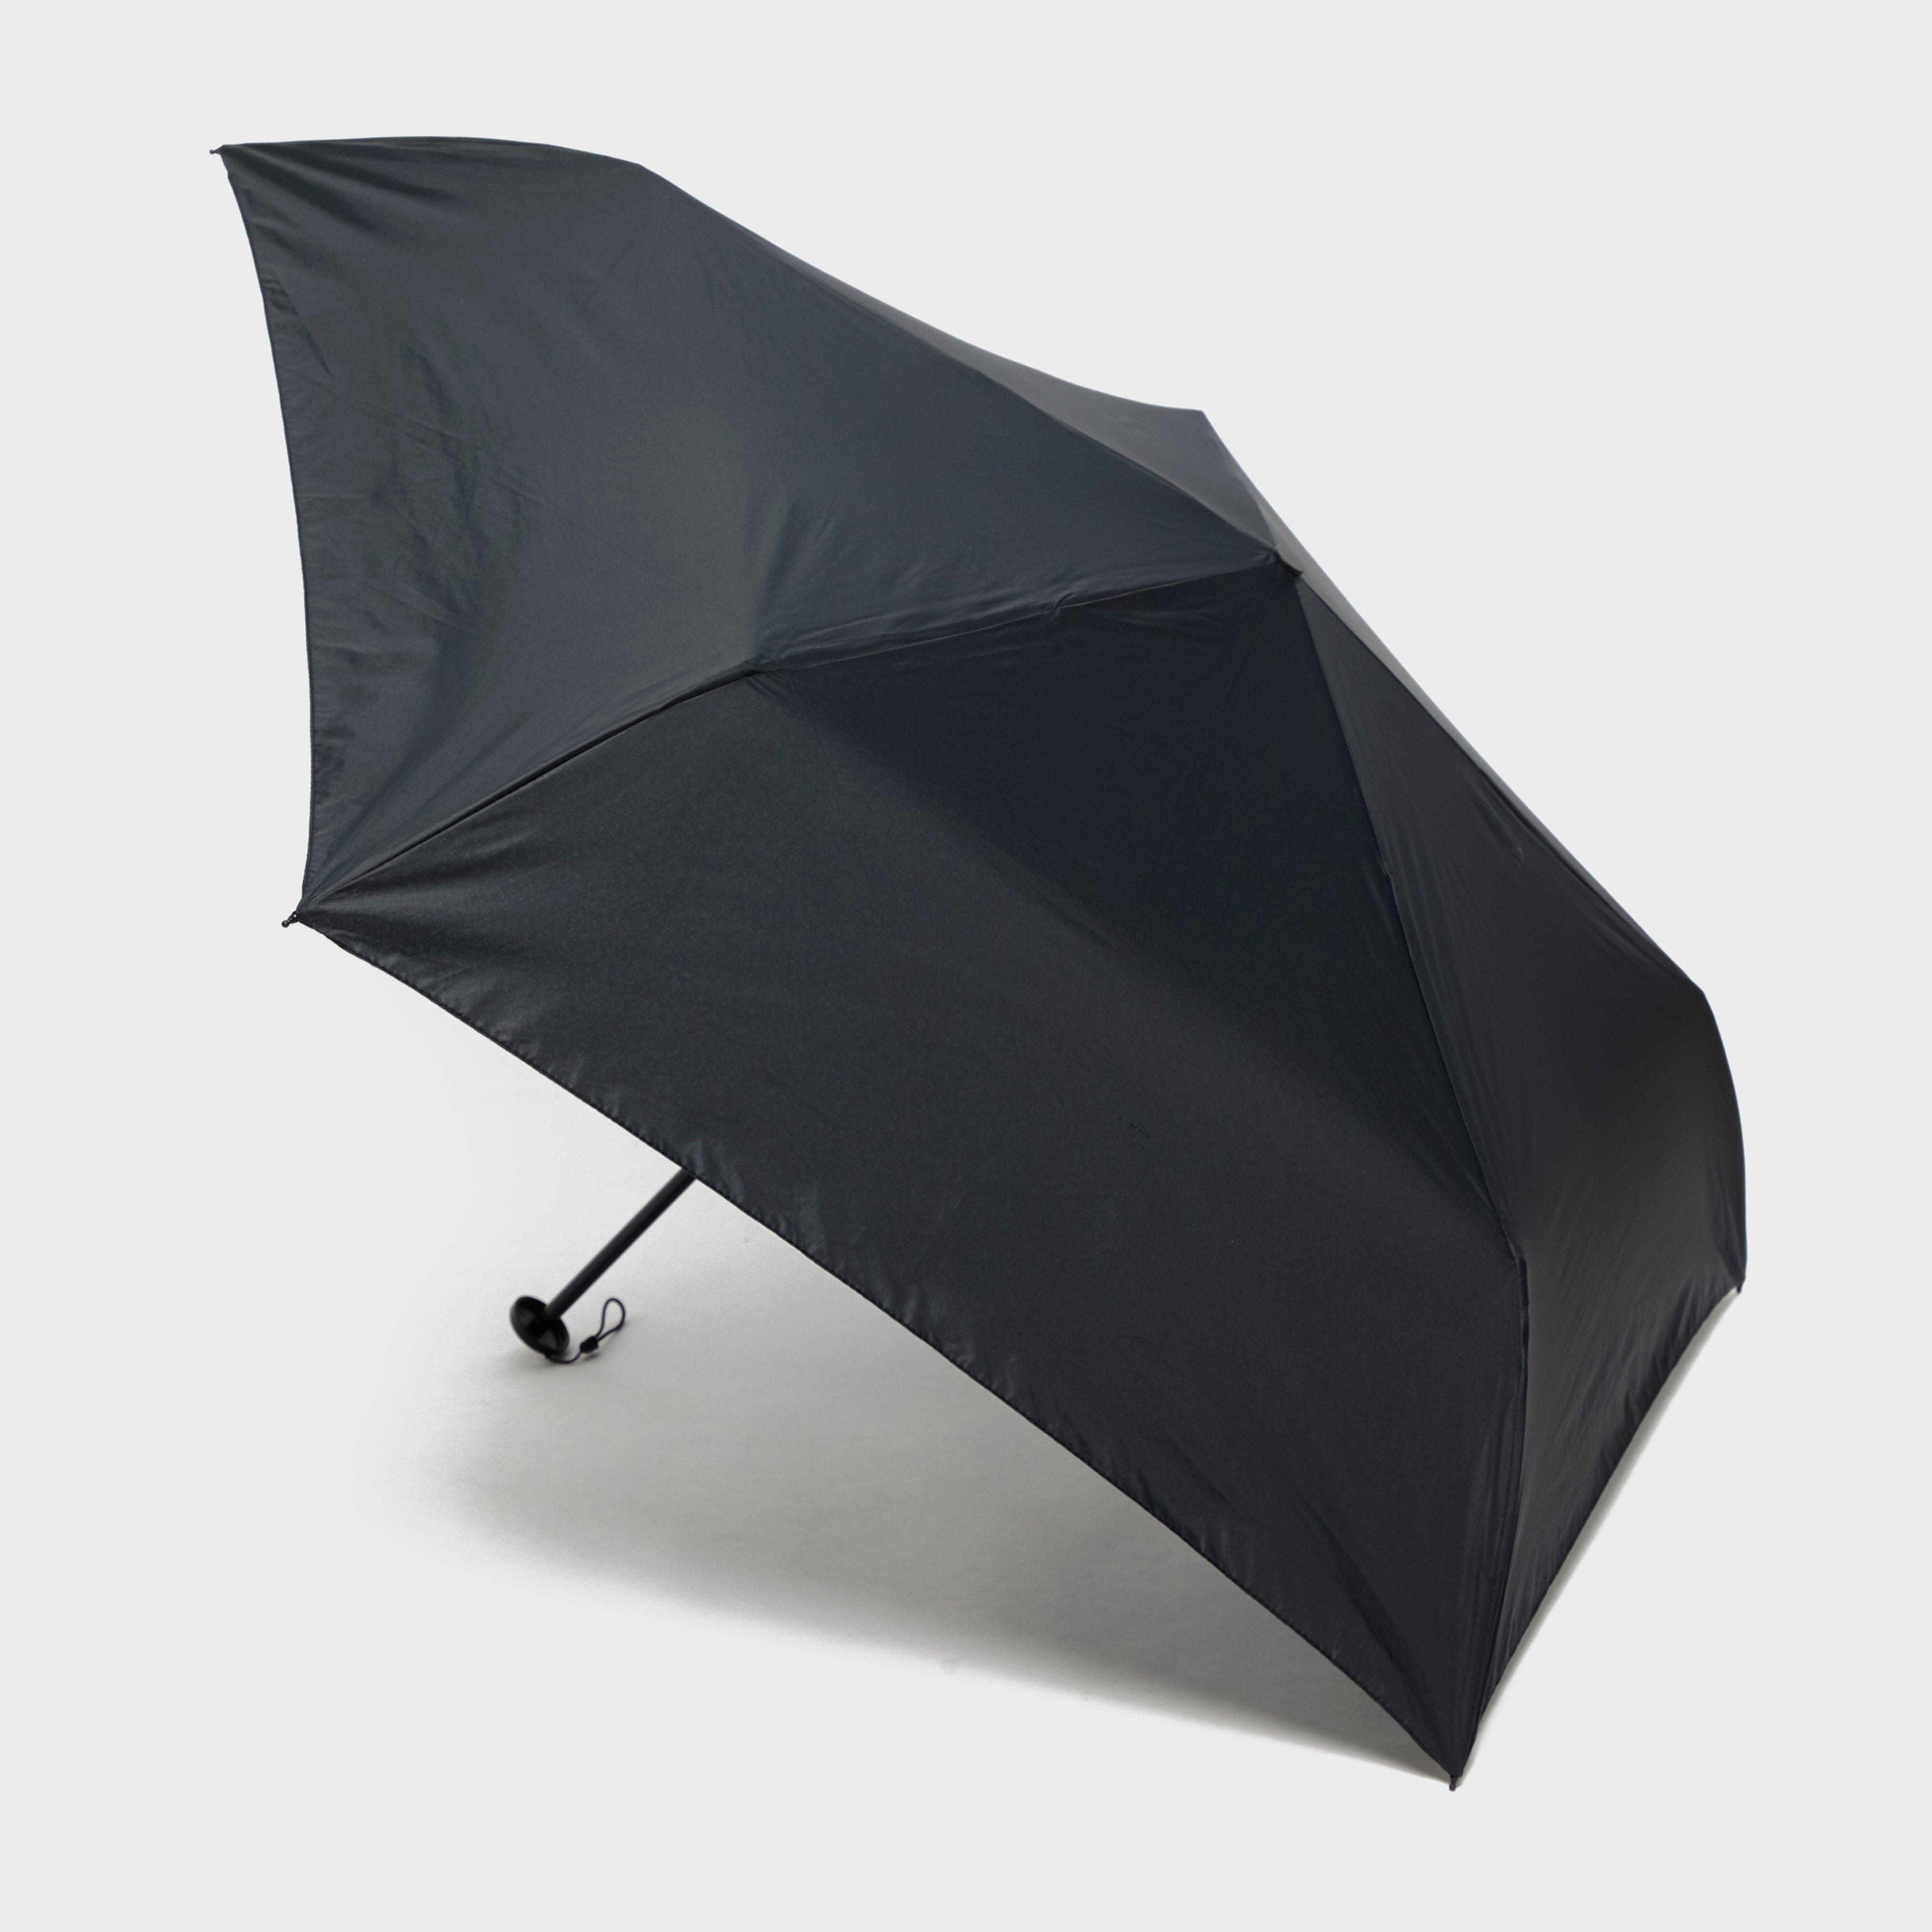 Fulton Aerolite Folding Umbrella - Black  Black